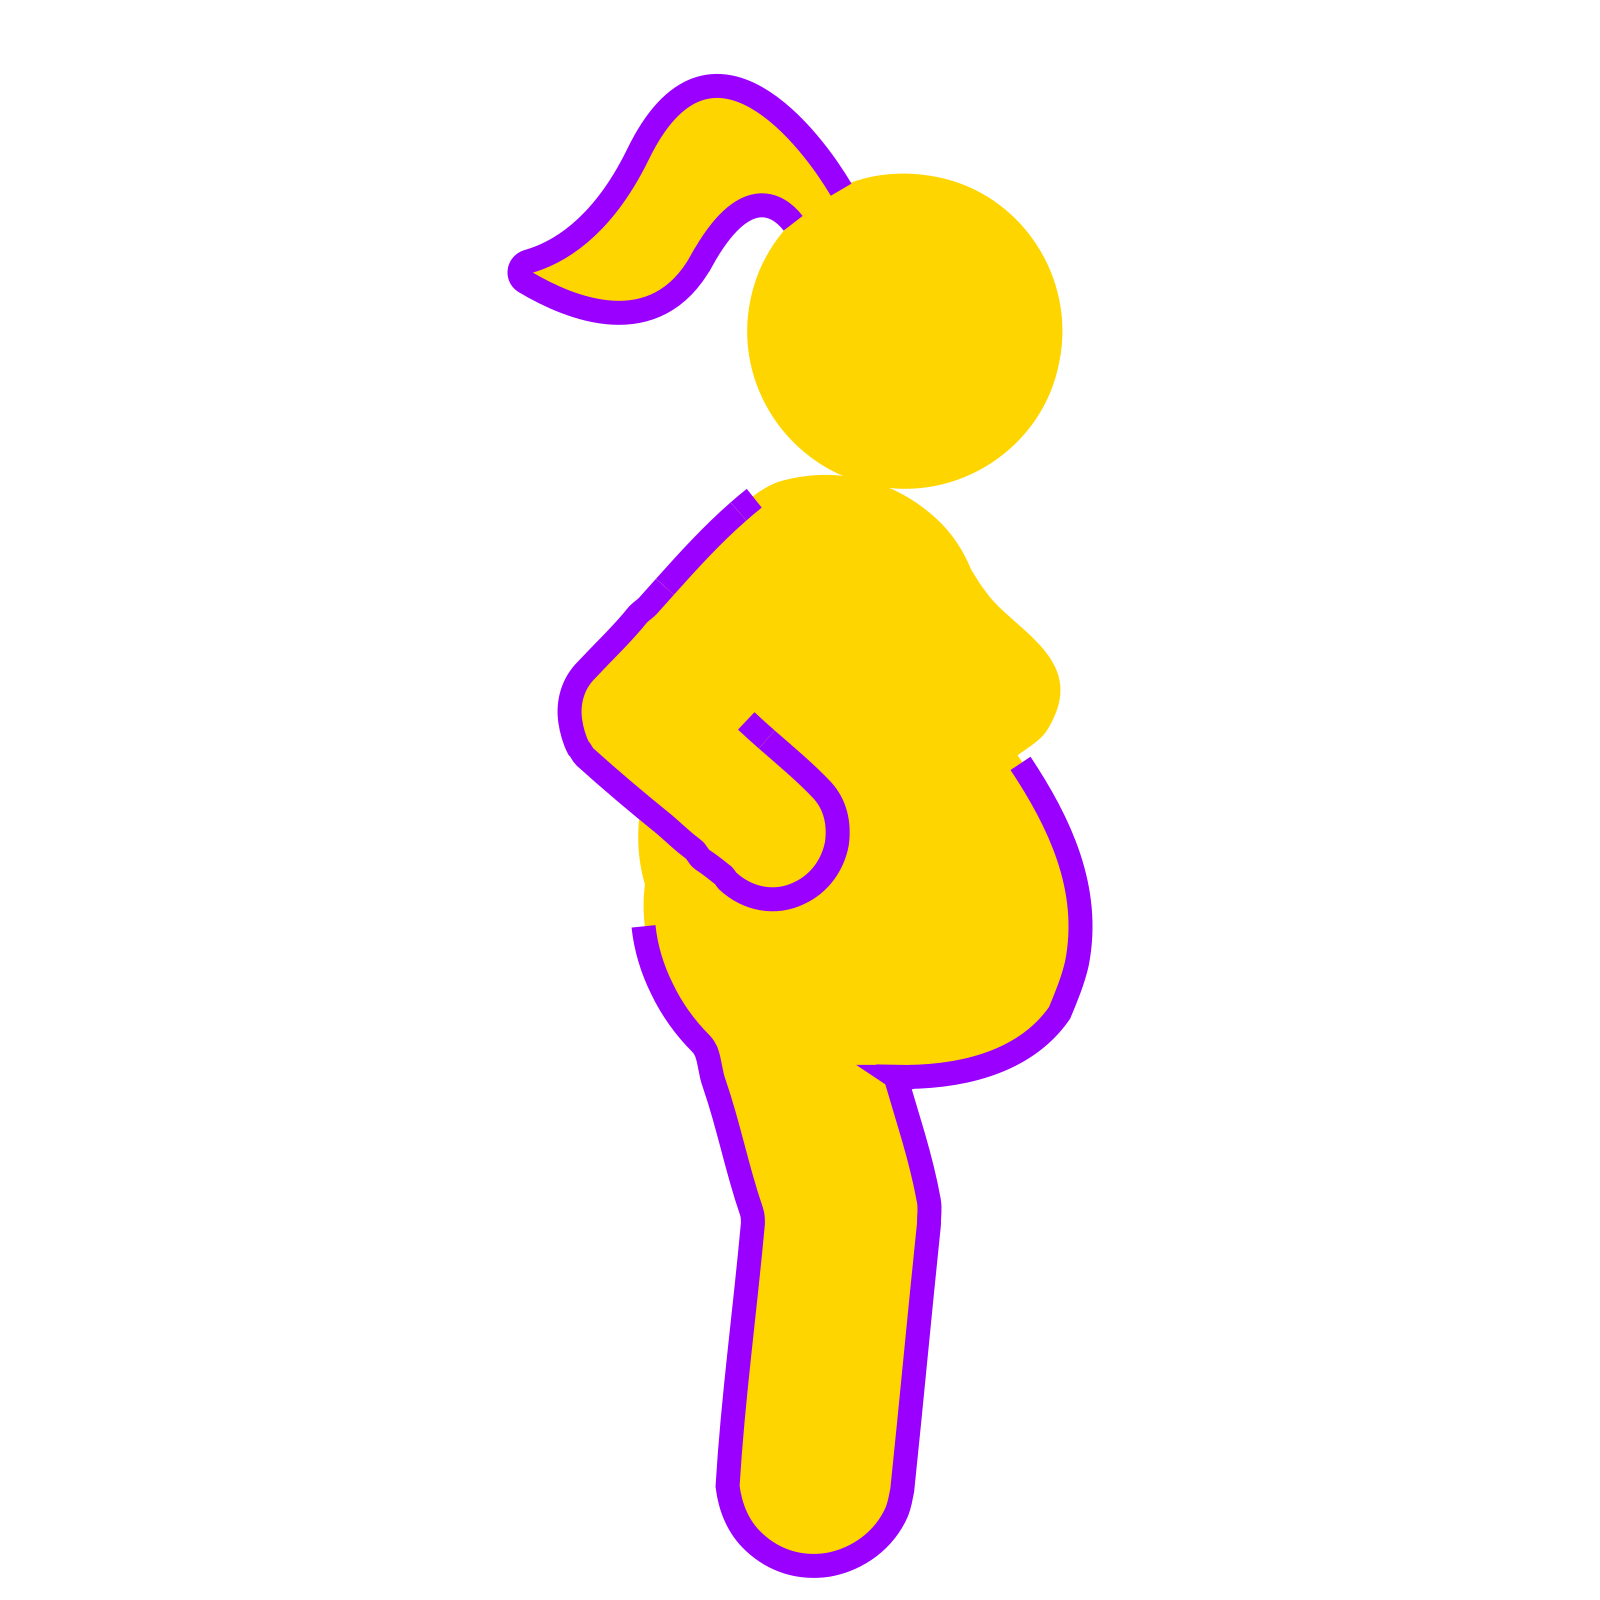 Haar_lichaam_yellow_purple